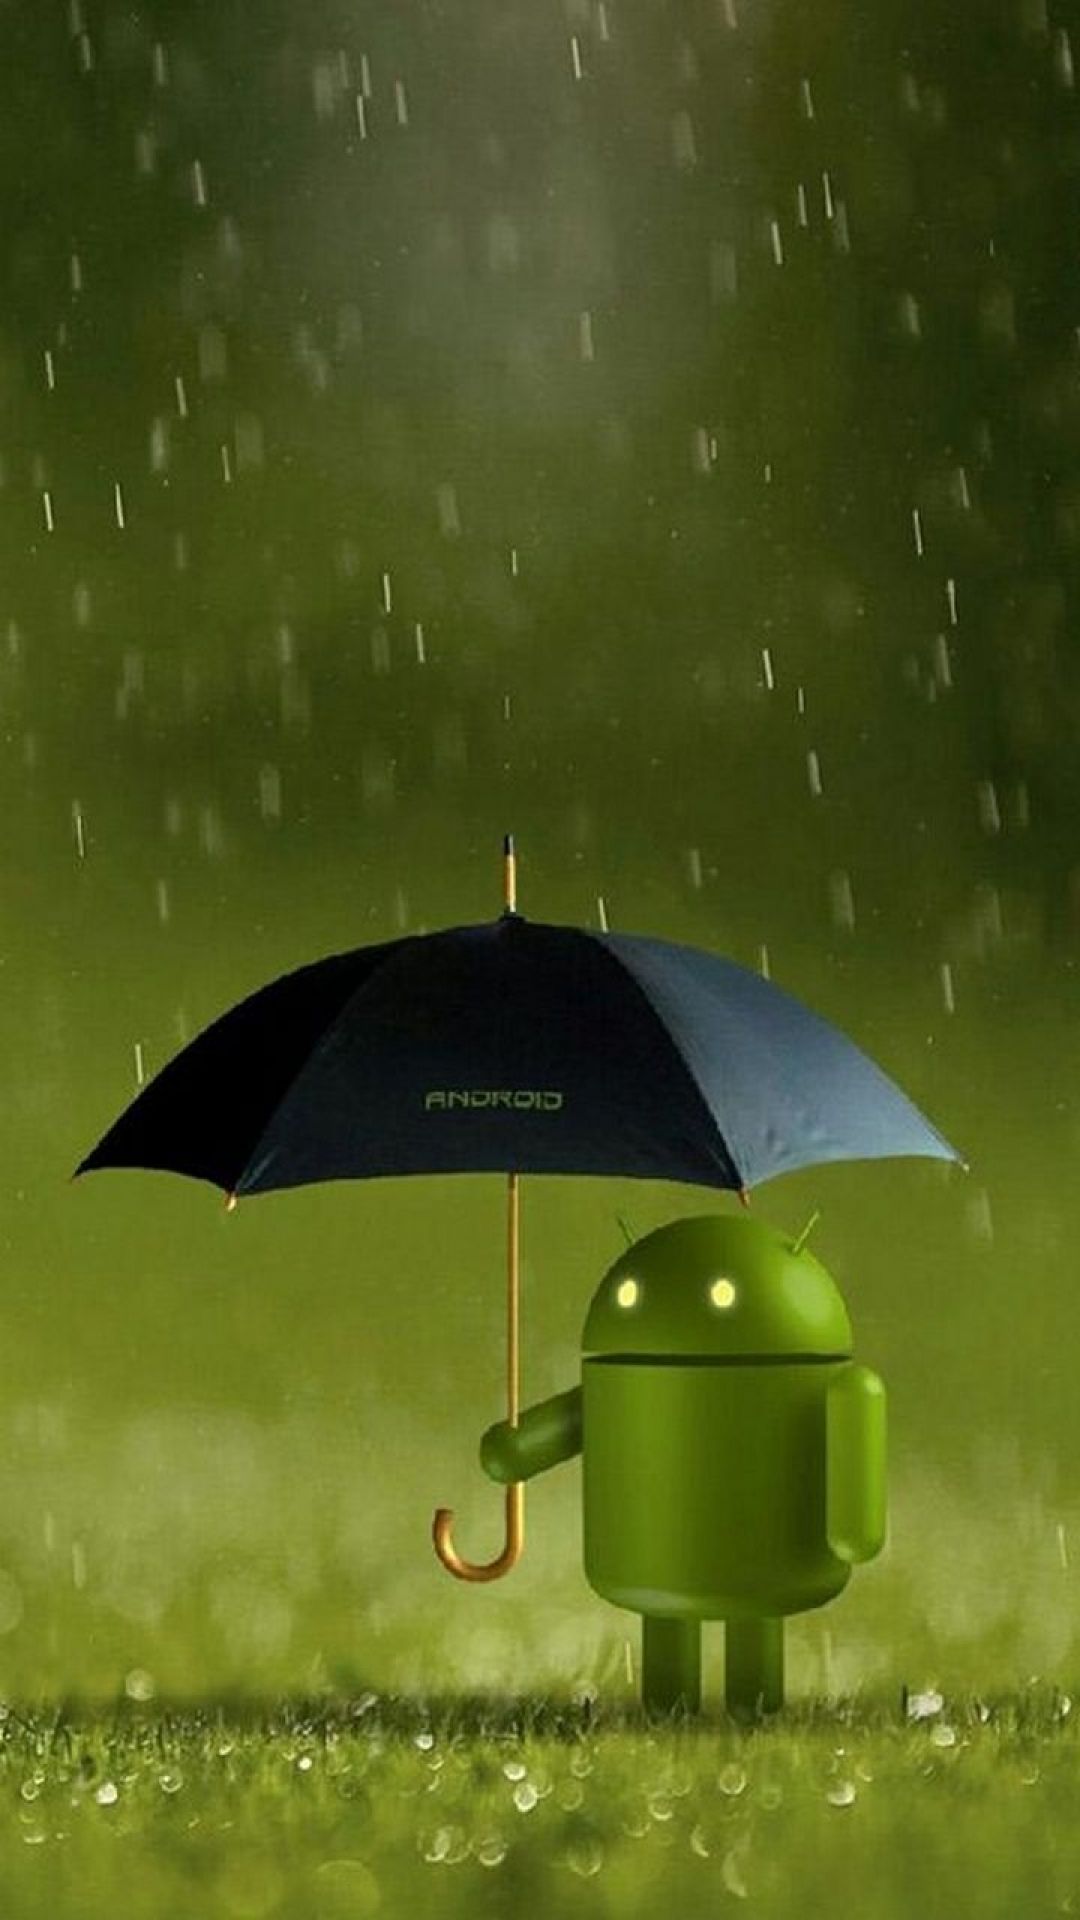 sfondi hd android,verde,ombrello,foglia,erba,illustrazione